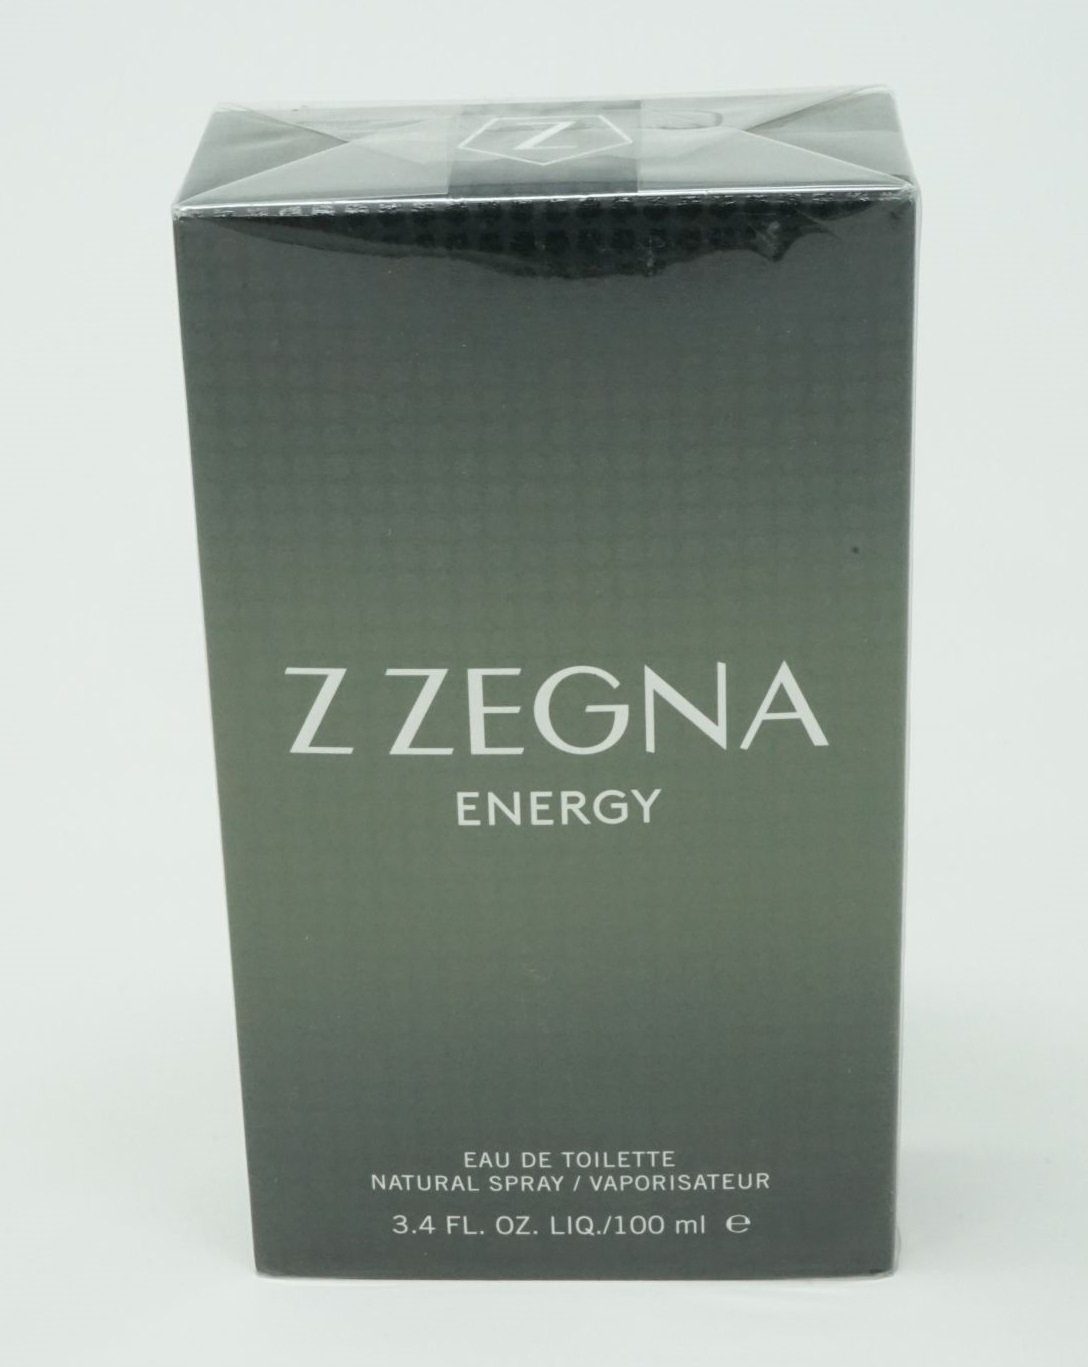 Ermenegildo Zegna Eau de Toilette Ermenegildo Zegna Z Zegna Energy Eau de Toilette Spray 100 ml